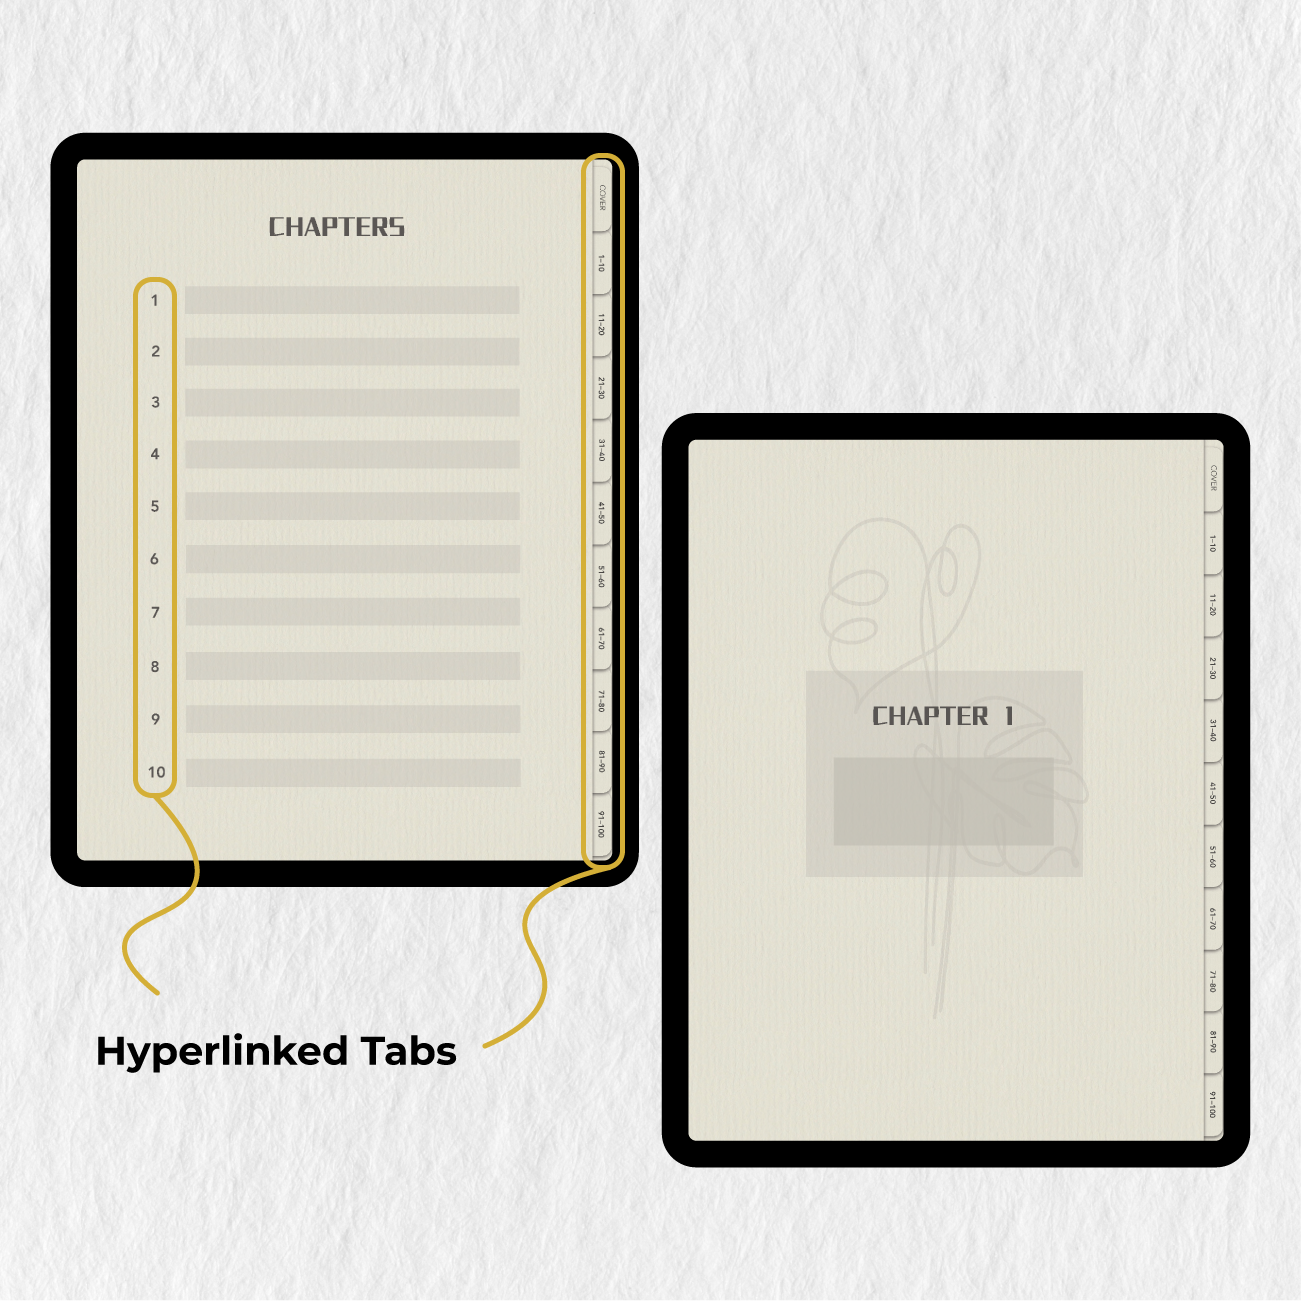 Digitales Notizbuch aus beigefarbenem Papier für Goodnotes Notability